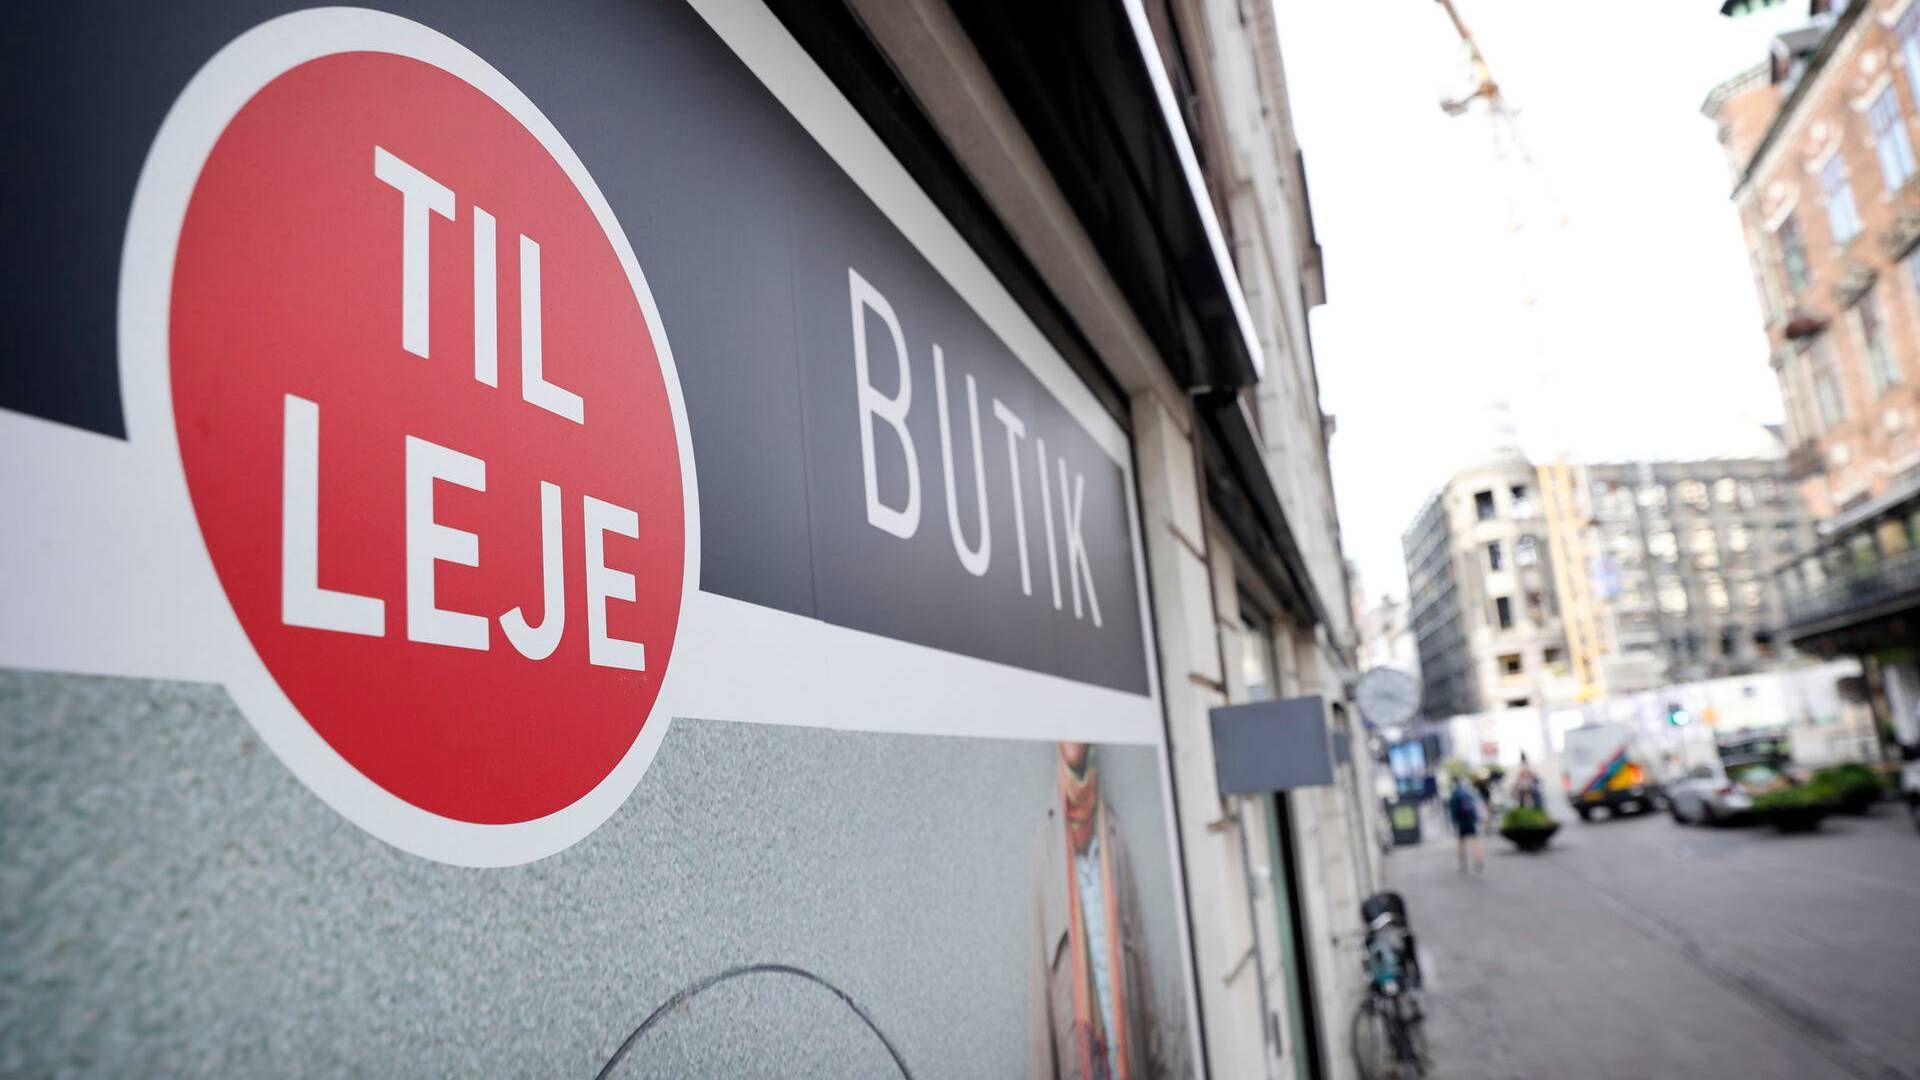 Tomme butikslokaler præger dele af detailhandlen. | Foto: Jens Dresling/Ritzau Scanpix